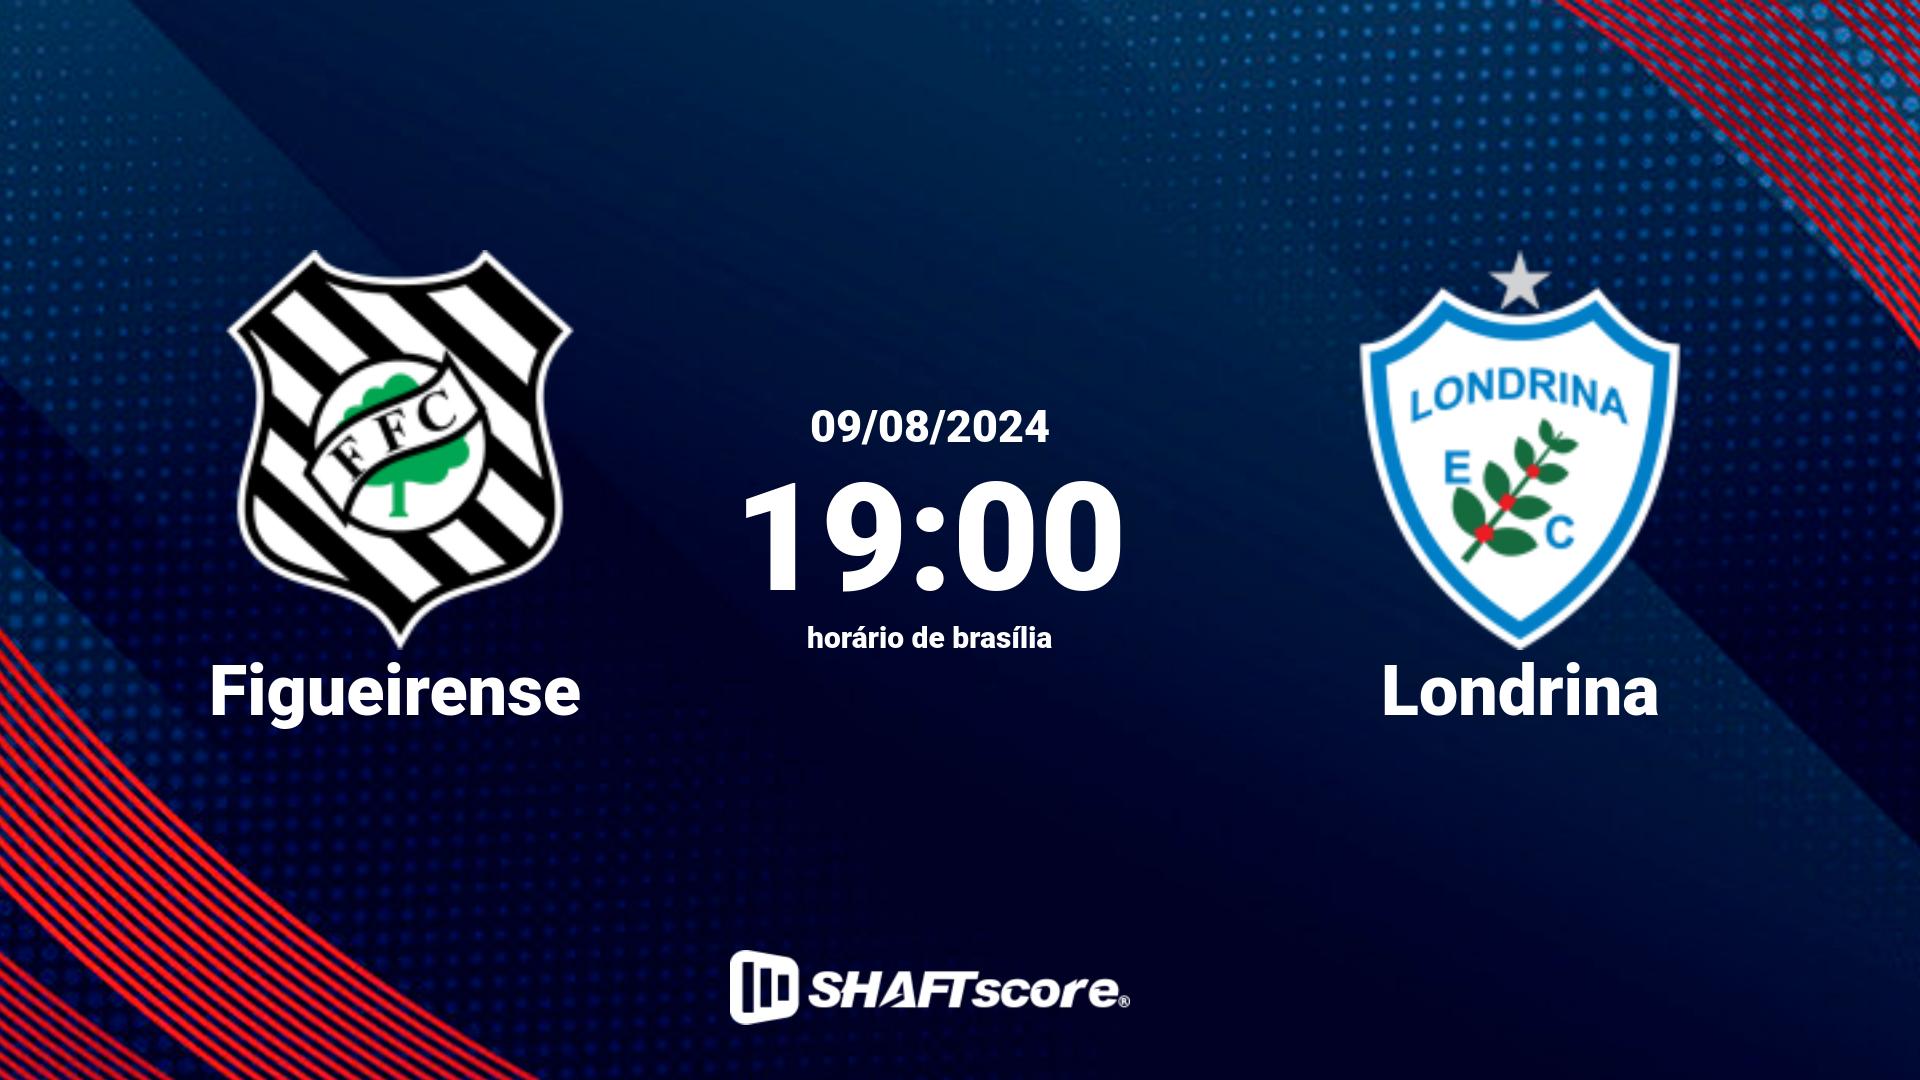 Estatísticas do jogo Figueirense vs Londrina 09.08 19:00